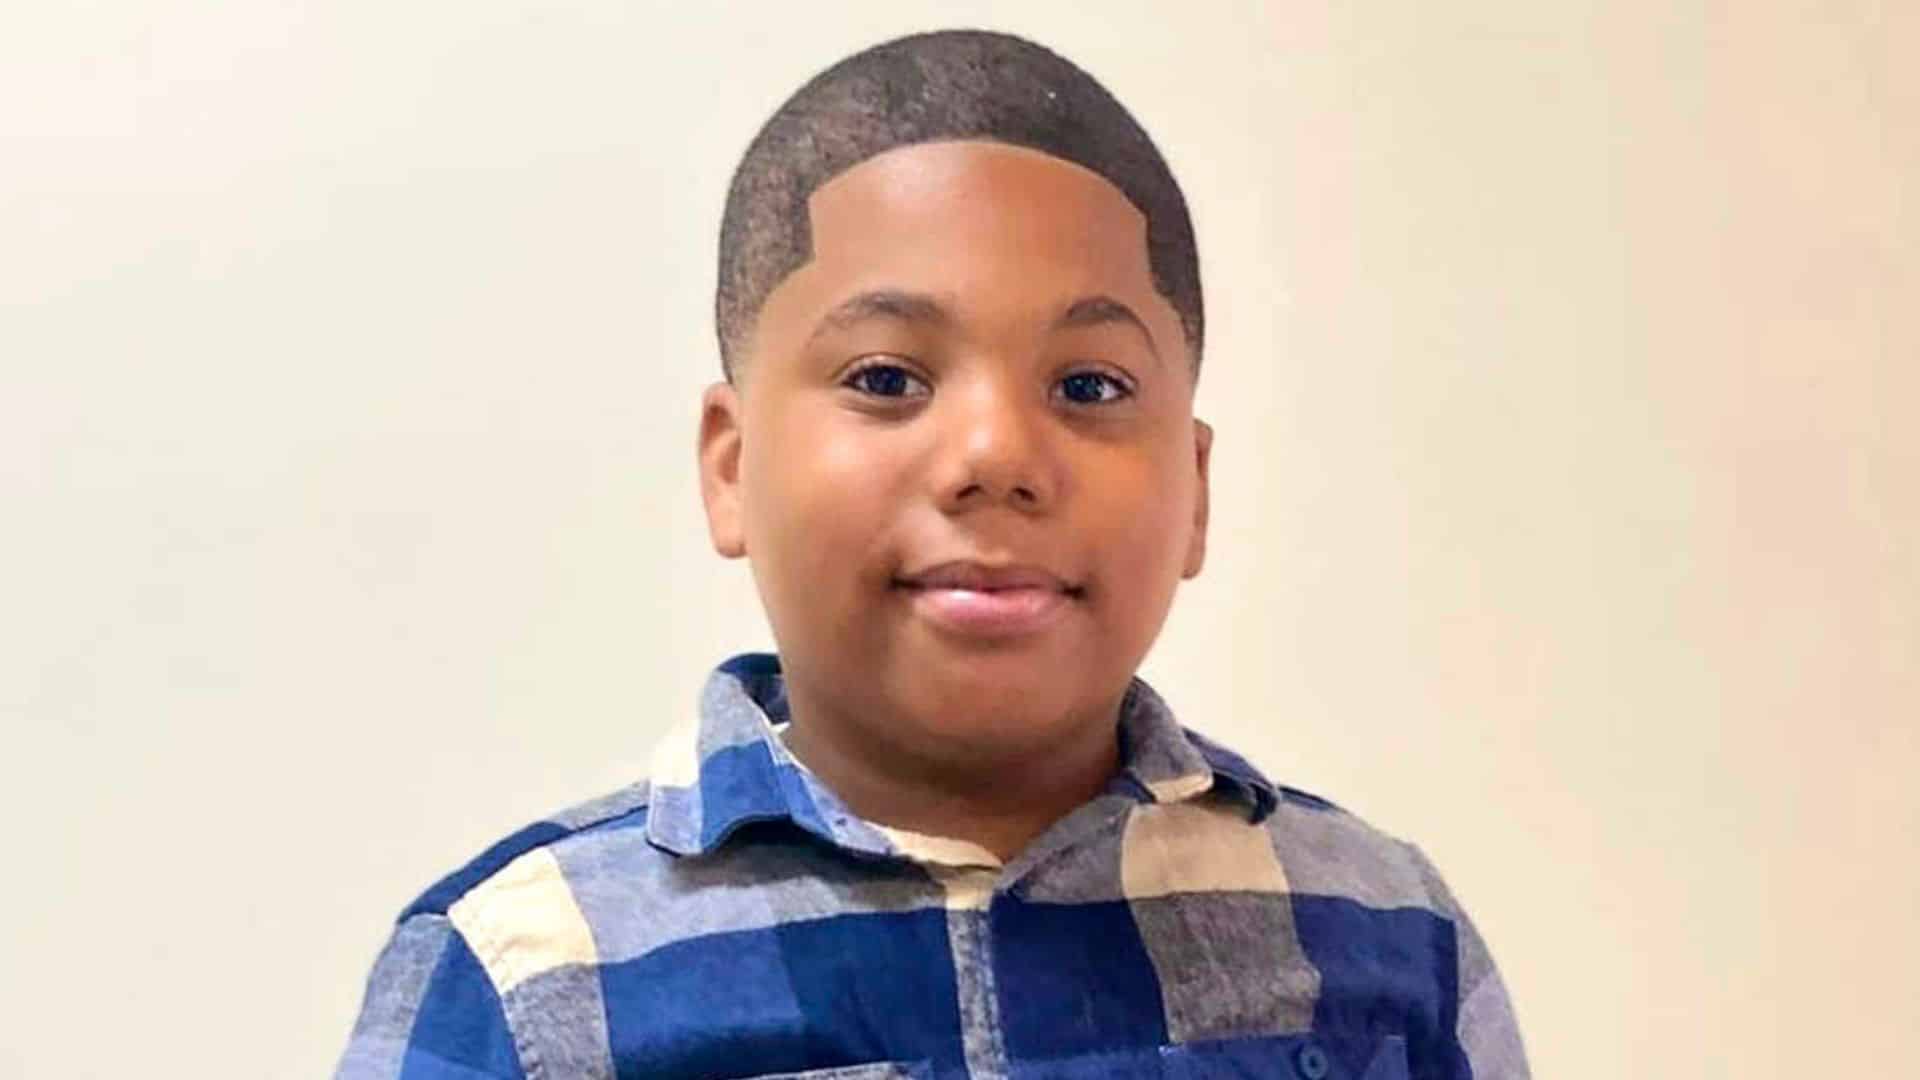 États Unis : à 11 ans il appelle les secours à l’aide et se fait tirer dessus par un policier